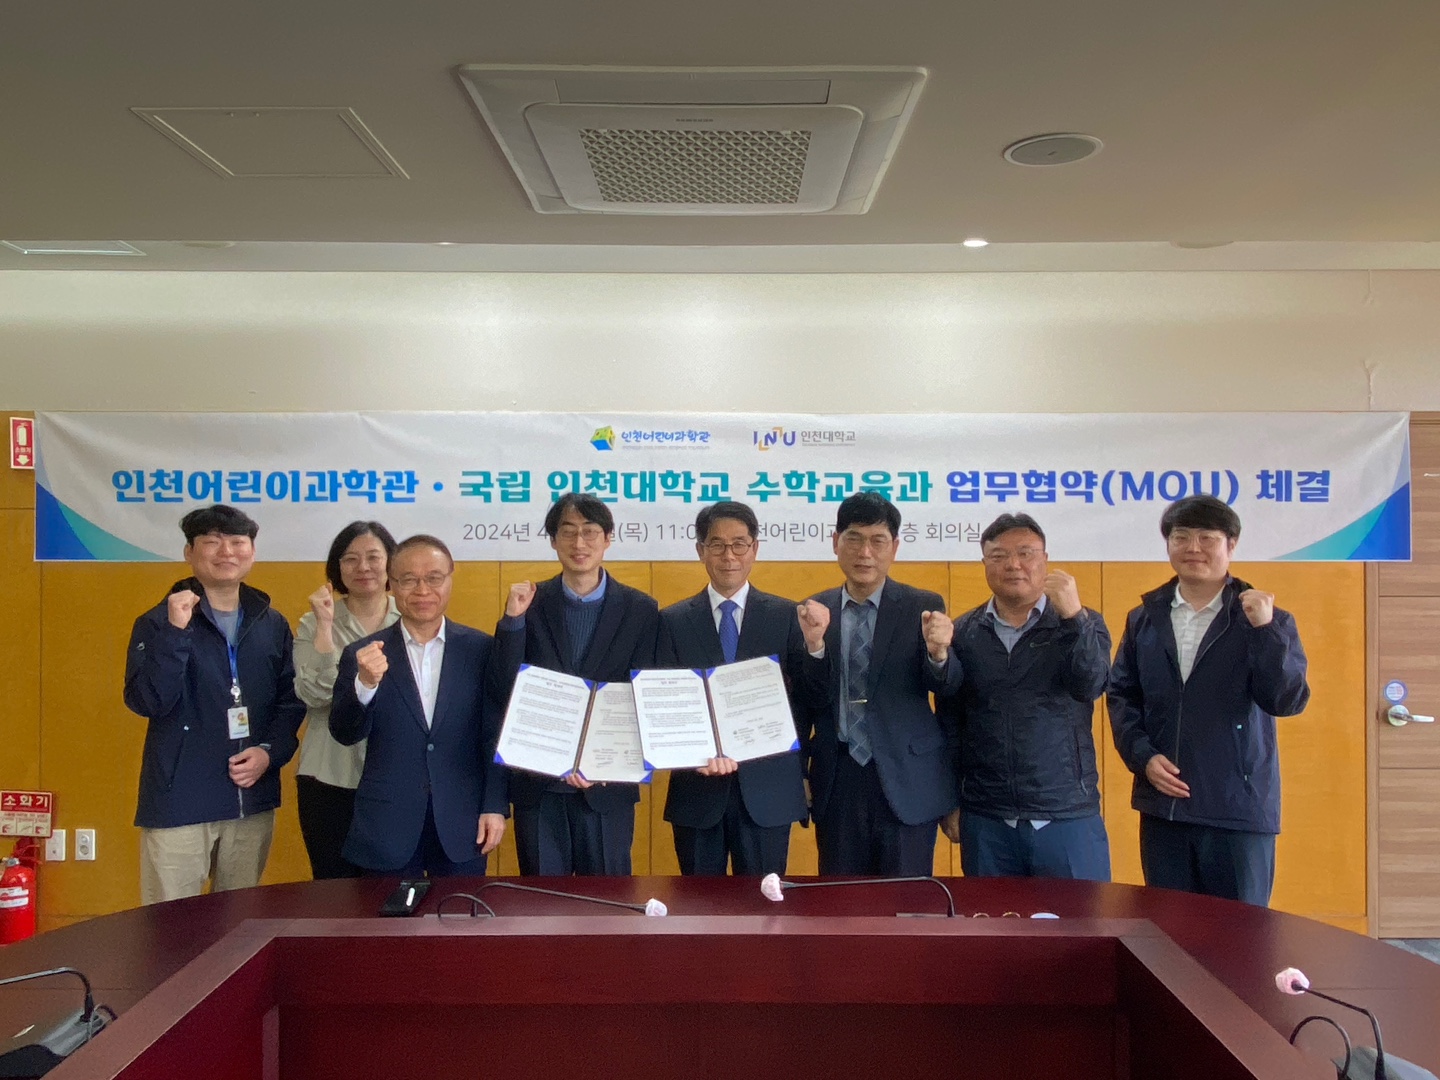 인천대학교 수학교육과는 지난 18일 인천어린이과학관과 상호협력 MOU를 체결했다고 밝혔다. 